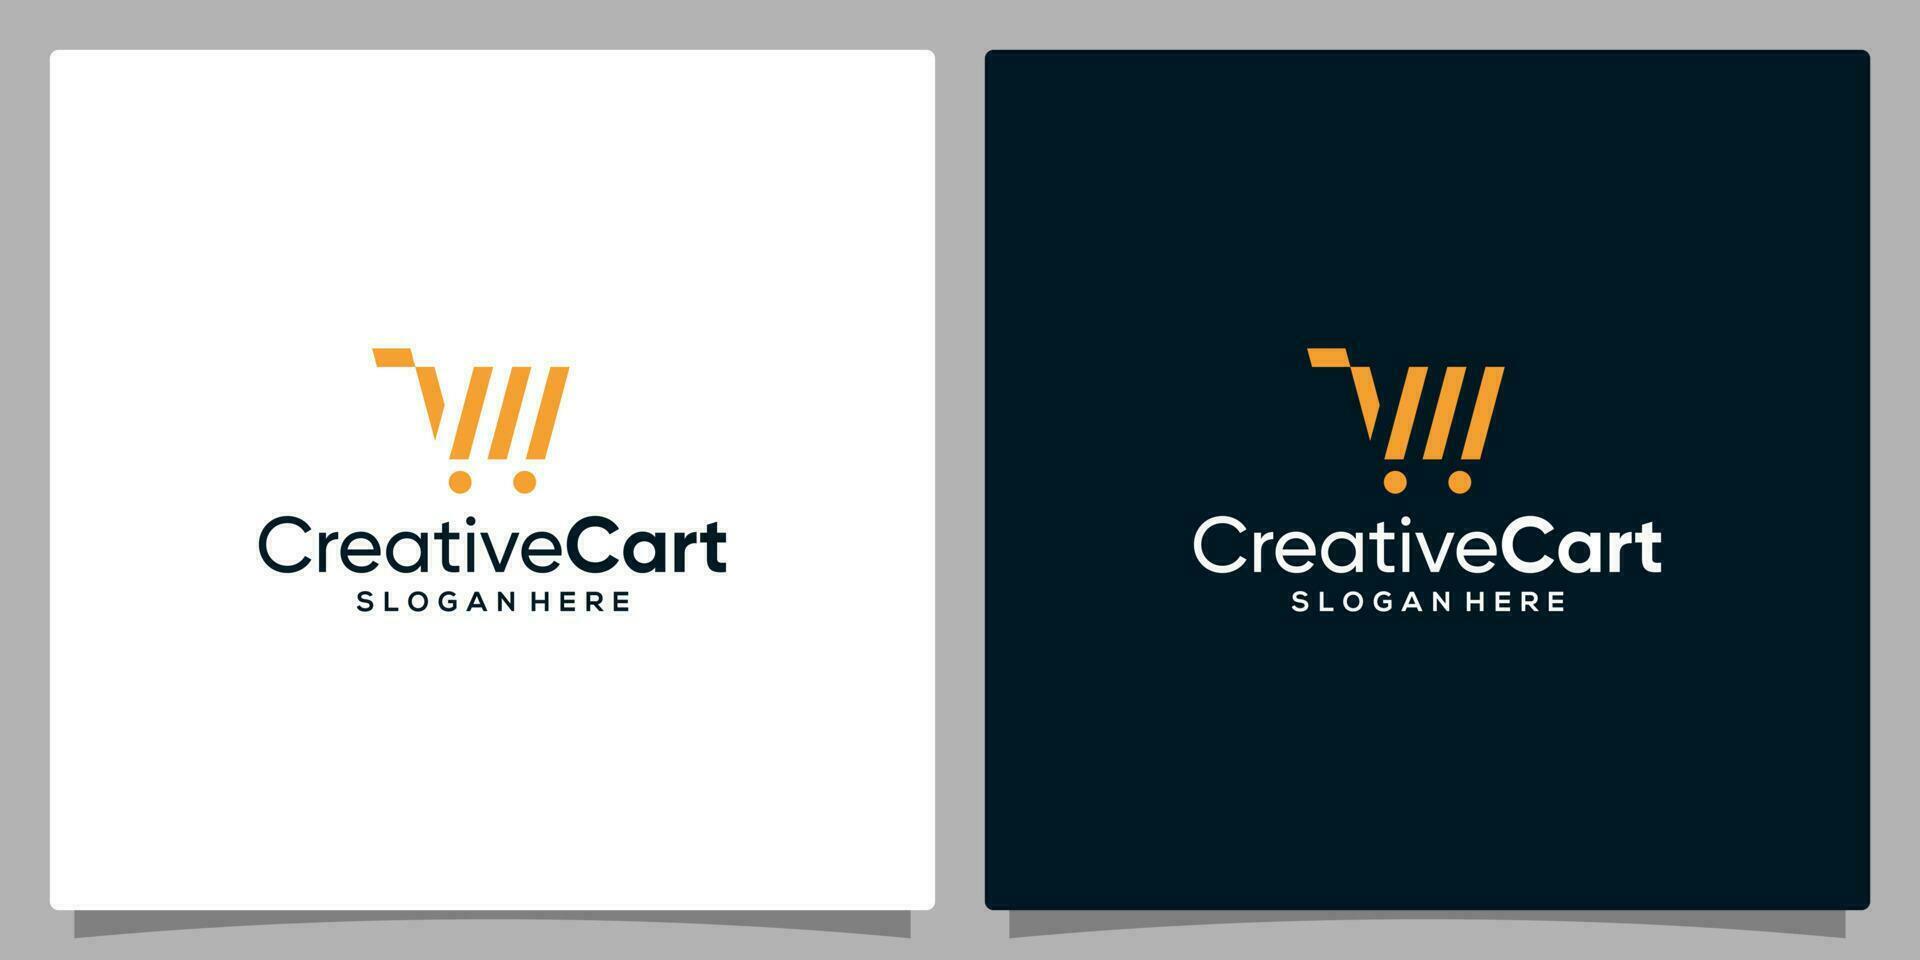 Template design icon logo vector shopping cart abstract. Premium vector